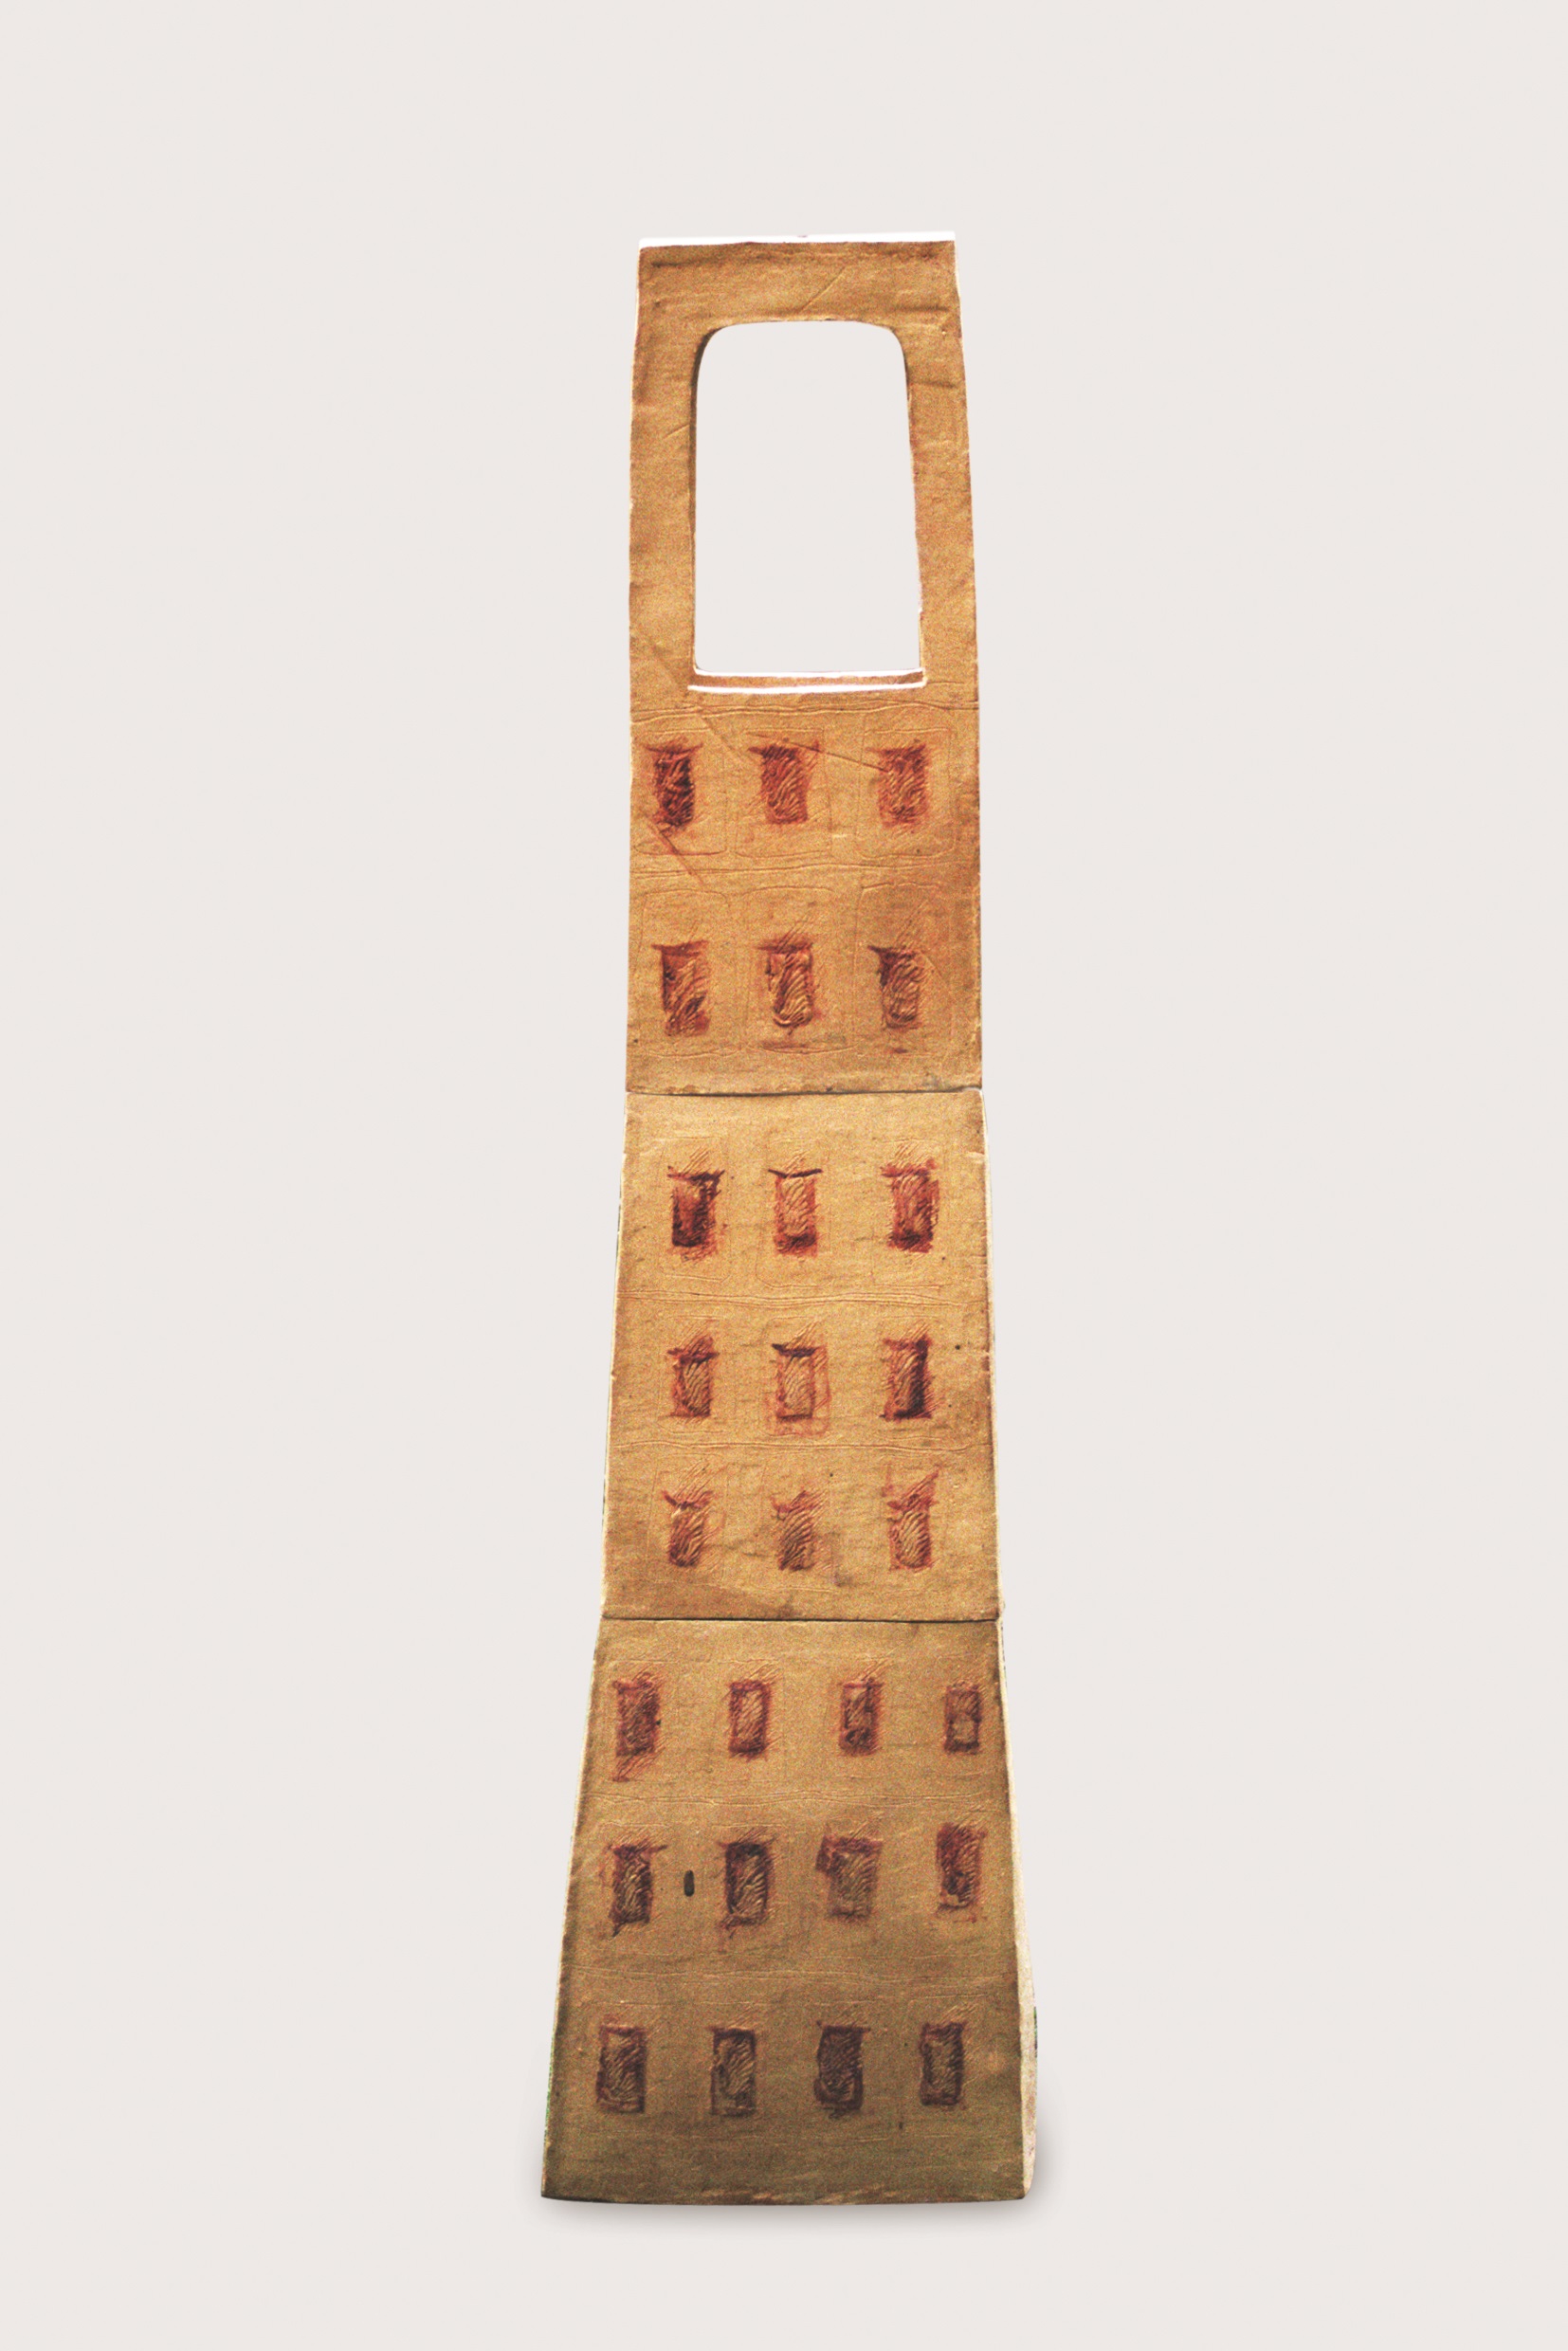 Zvonice, rok vzniku 2001, materiál šamot, kysličníky kovů